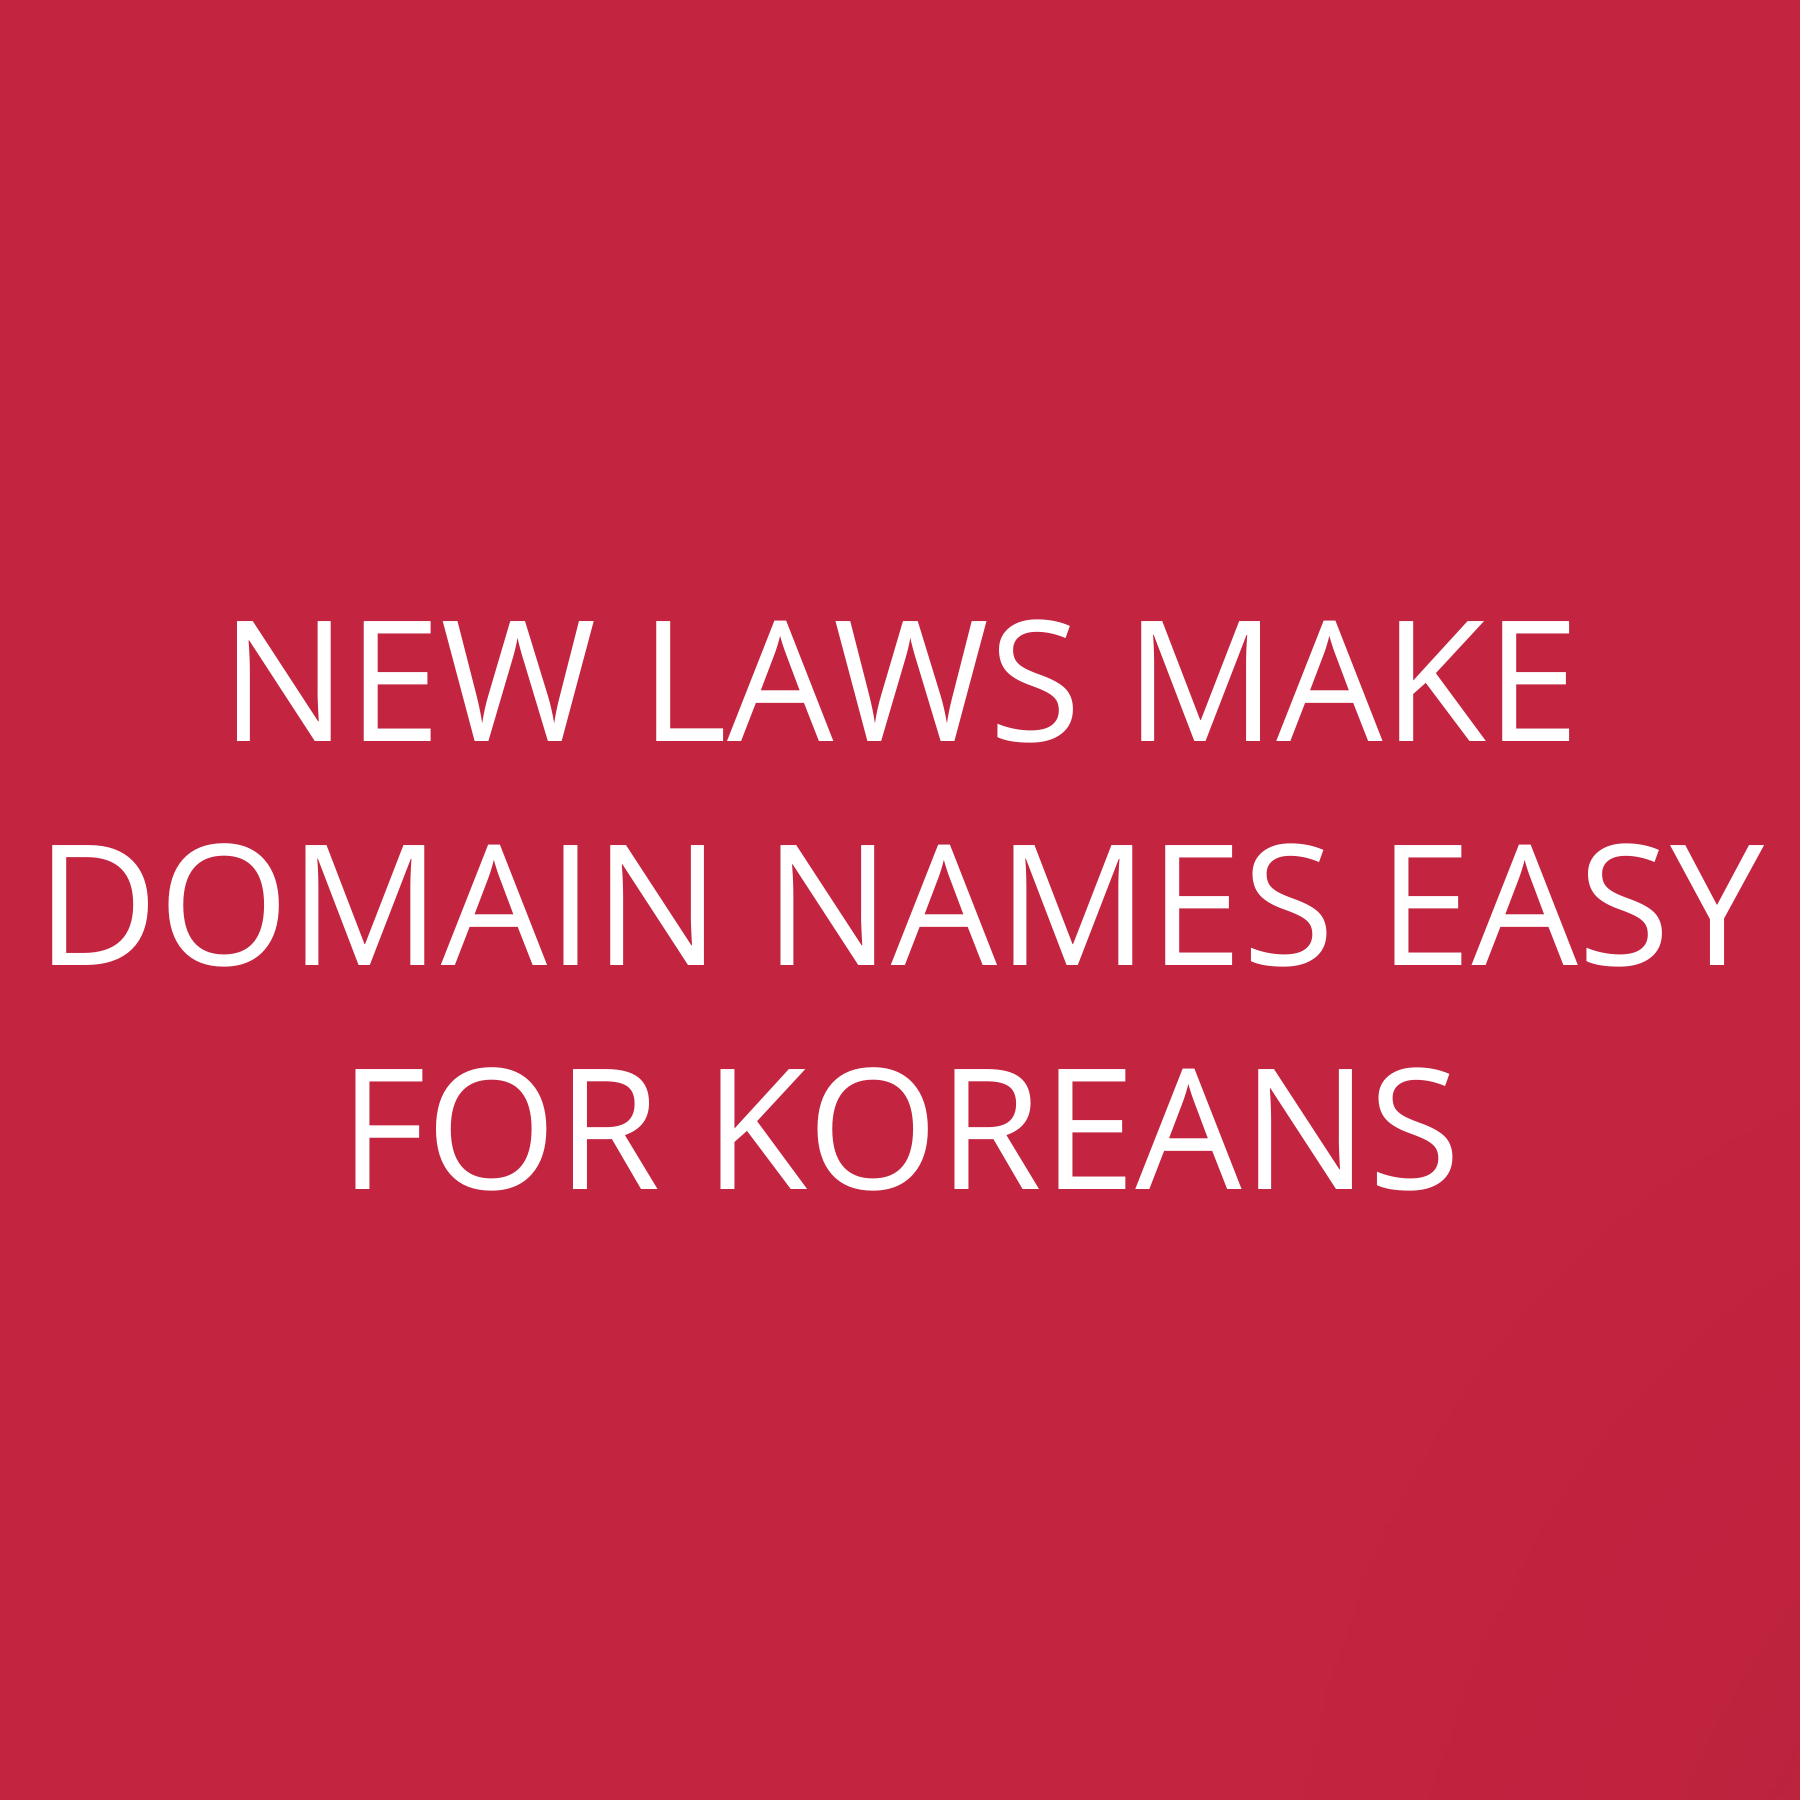 New laws make domain names easy for Koreans